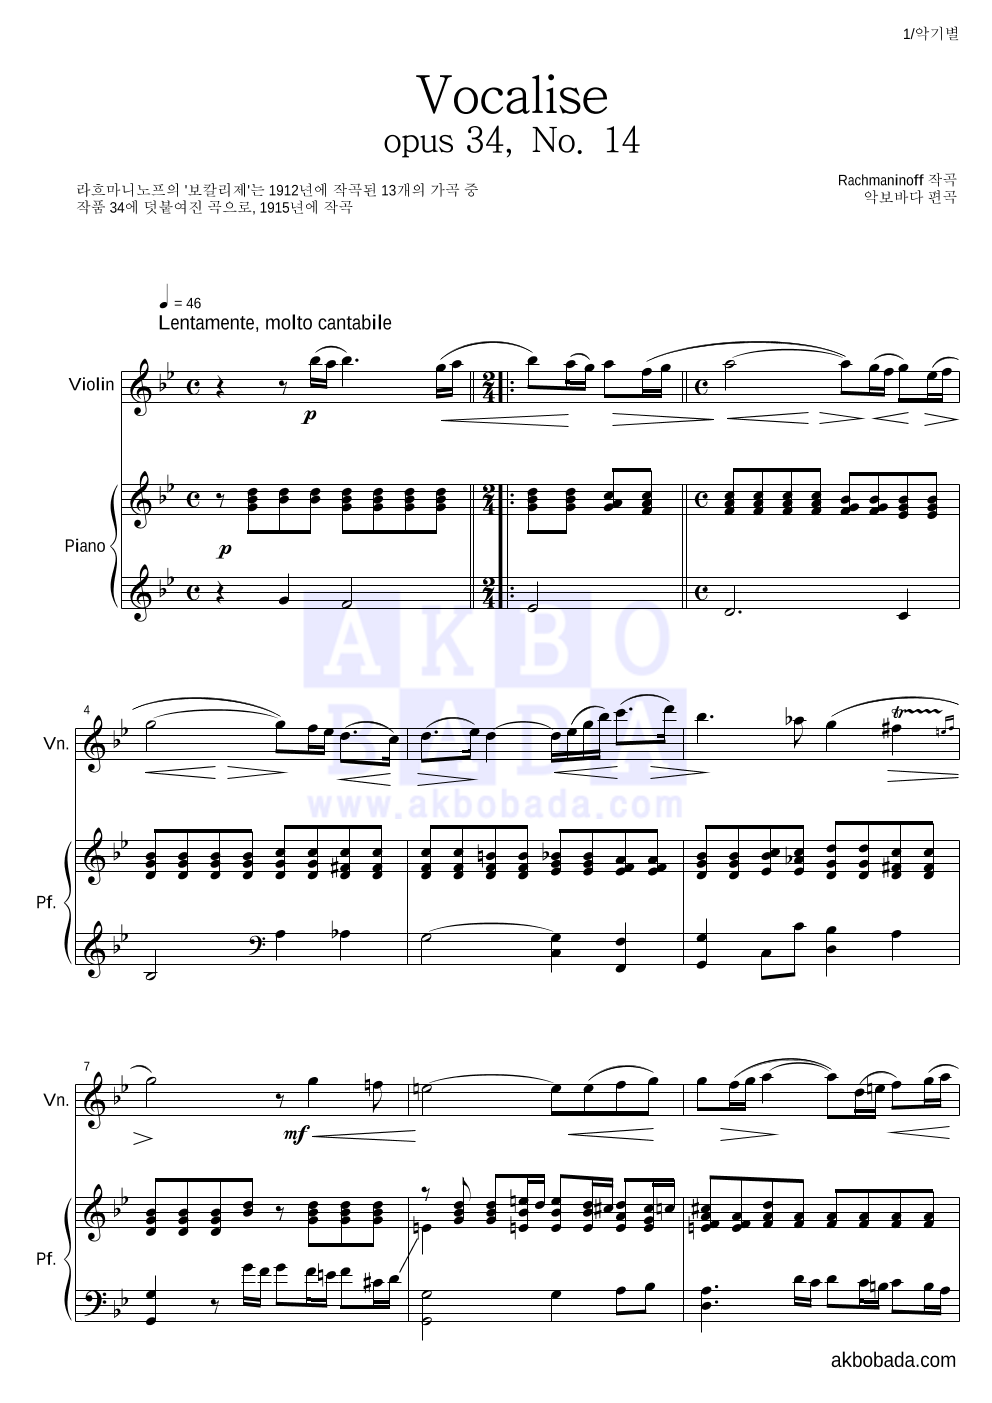 라흐마니노프 - 보칼리제(Vocalise) 바이올린&피아노 악보 